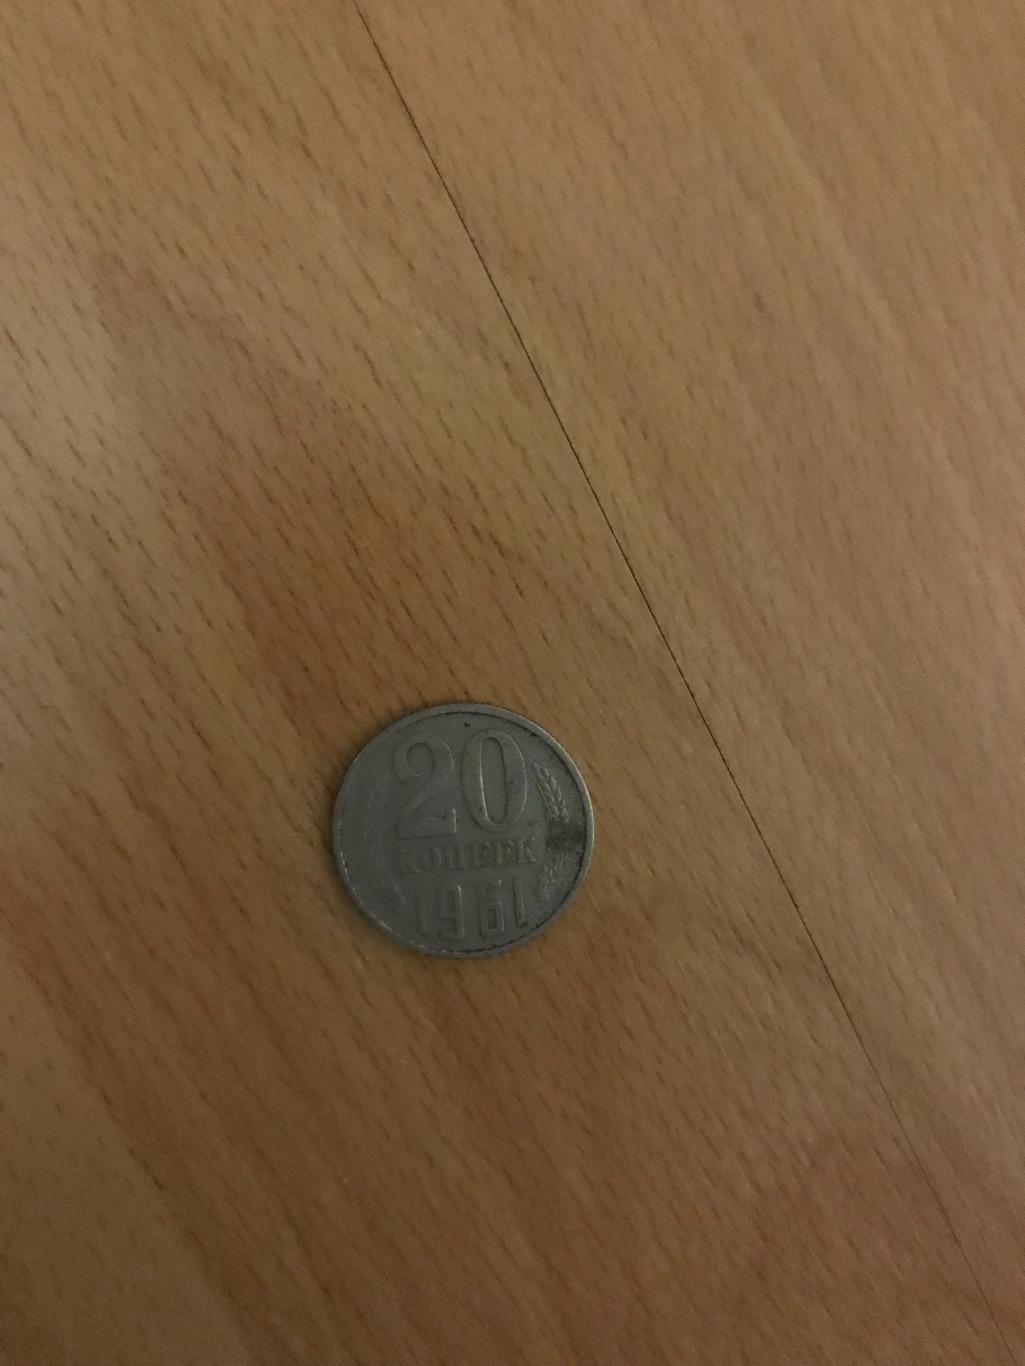 Монета 20 копійок 1961